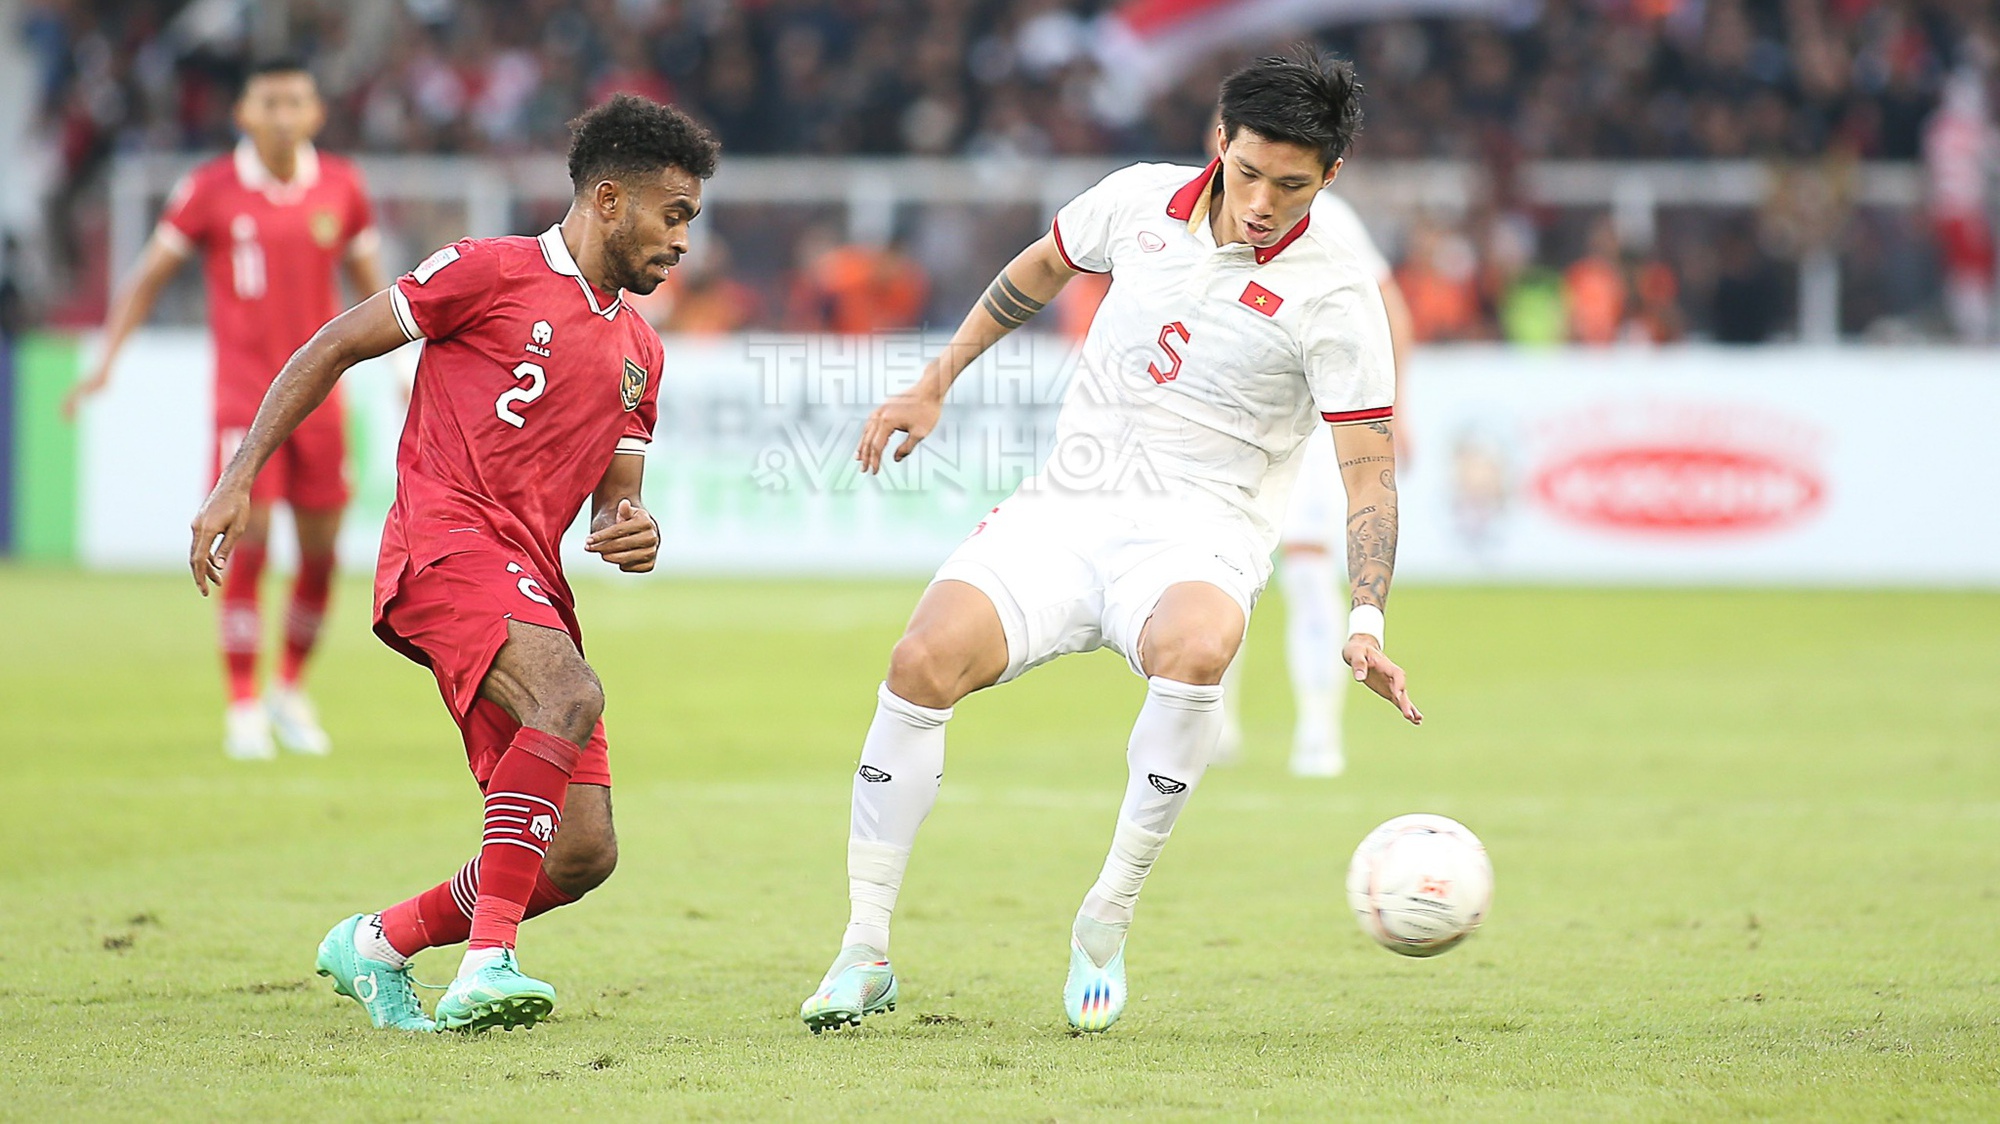 HLV Park Hang Seo: ‘Indonesia mạnh nhưng đội tuyển Việt Nam còn mạnh hơn’